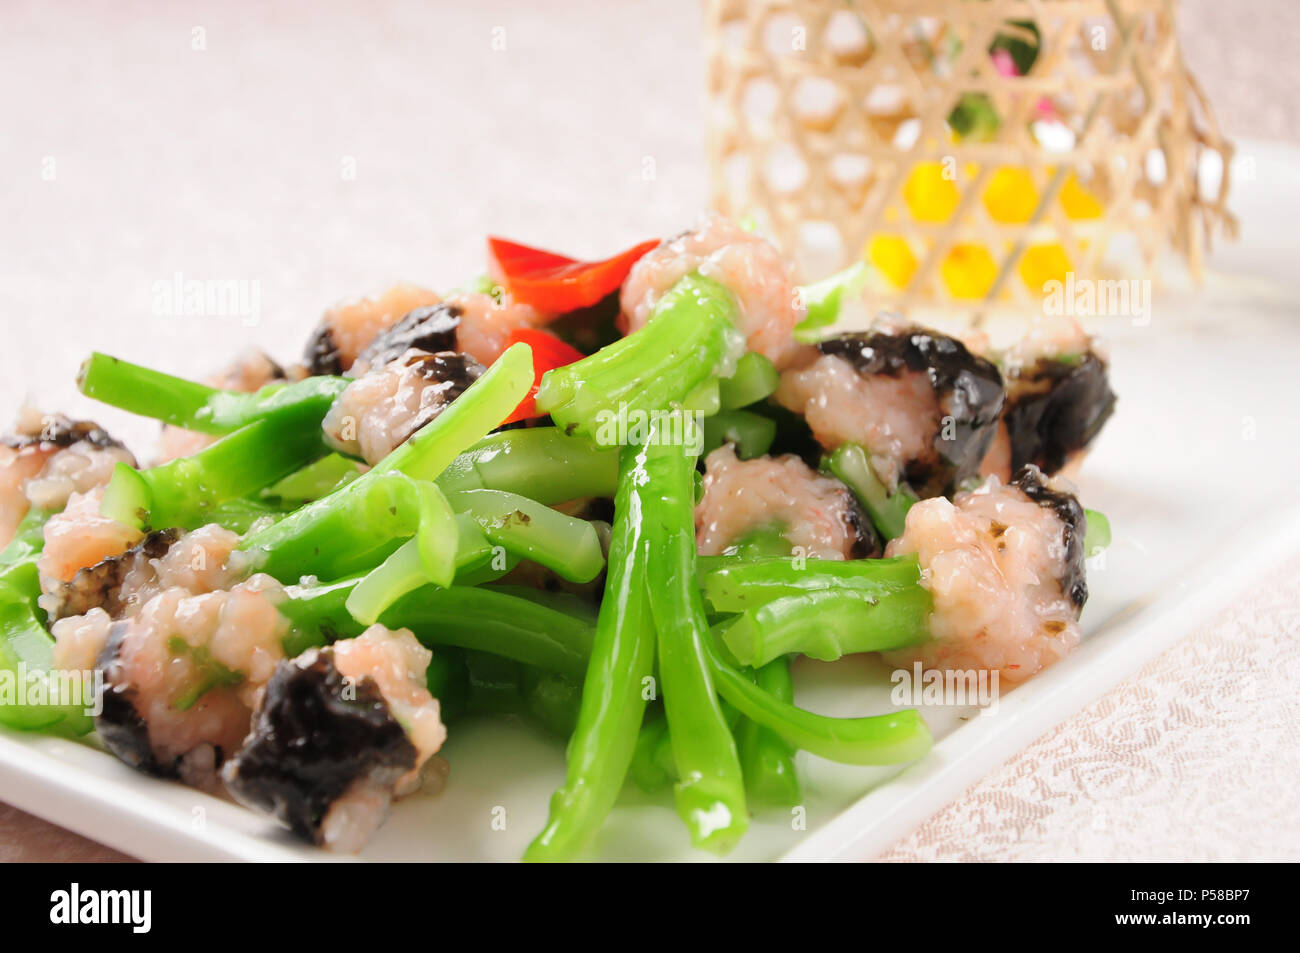 Chinesische Küche - Sauteed chinesischer Brokkoli mit Hackfleisch/Garnelen Stockfoto